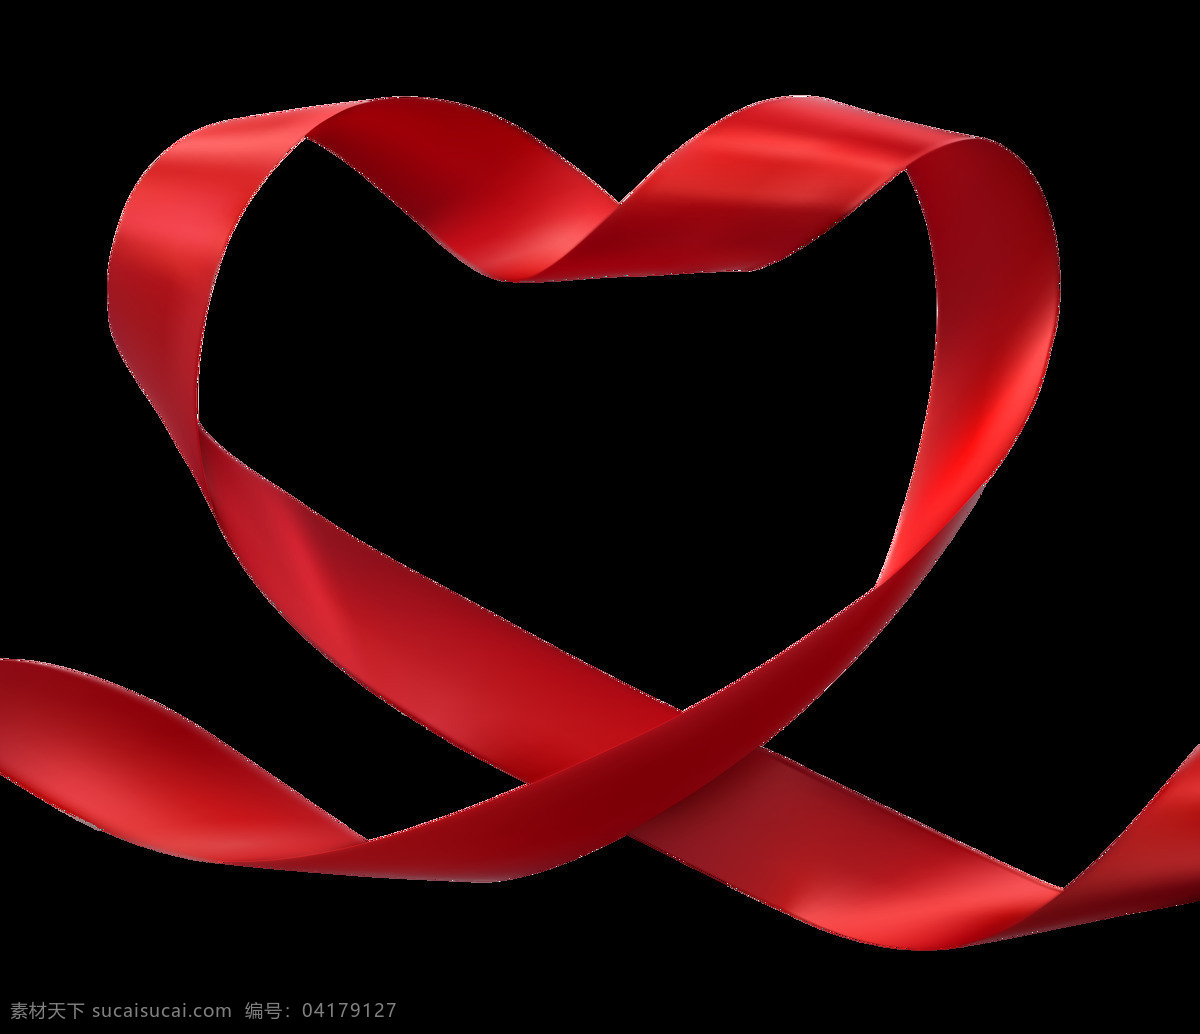 心形丝带 红色 心形 心丝带 红色丝带 心形状 公益 元素 底纹边框 花边花纹